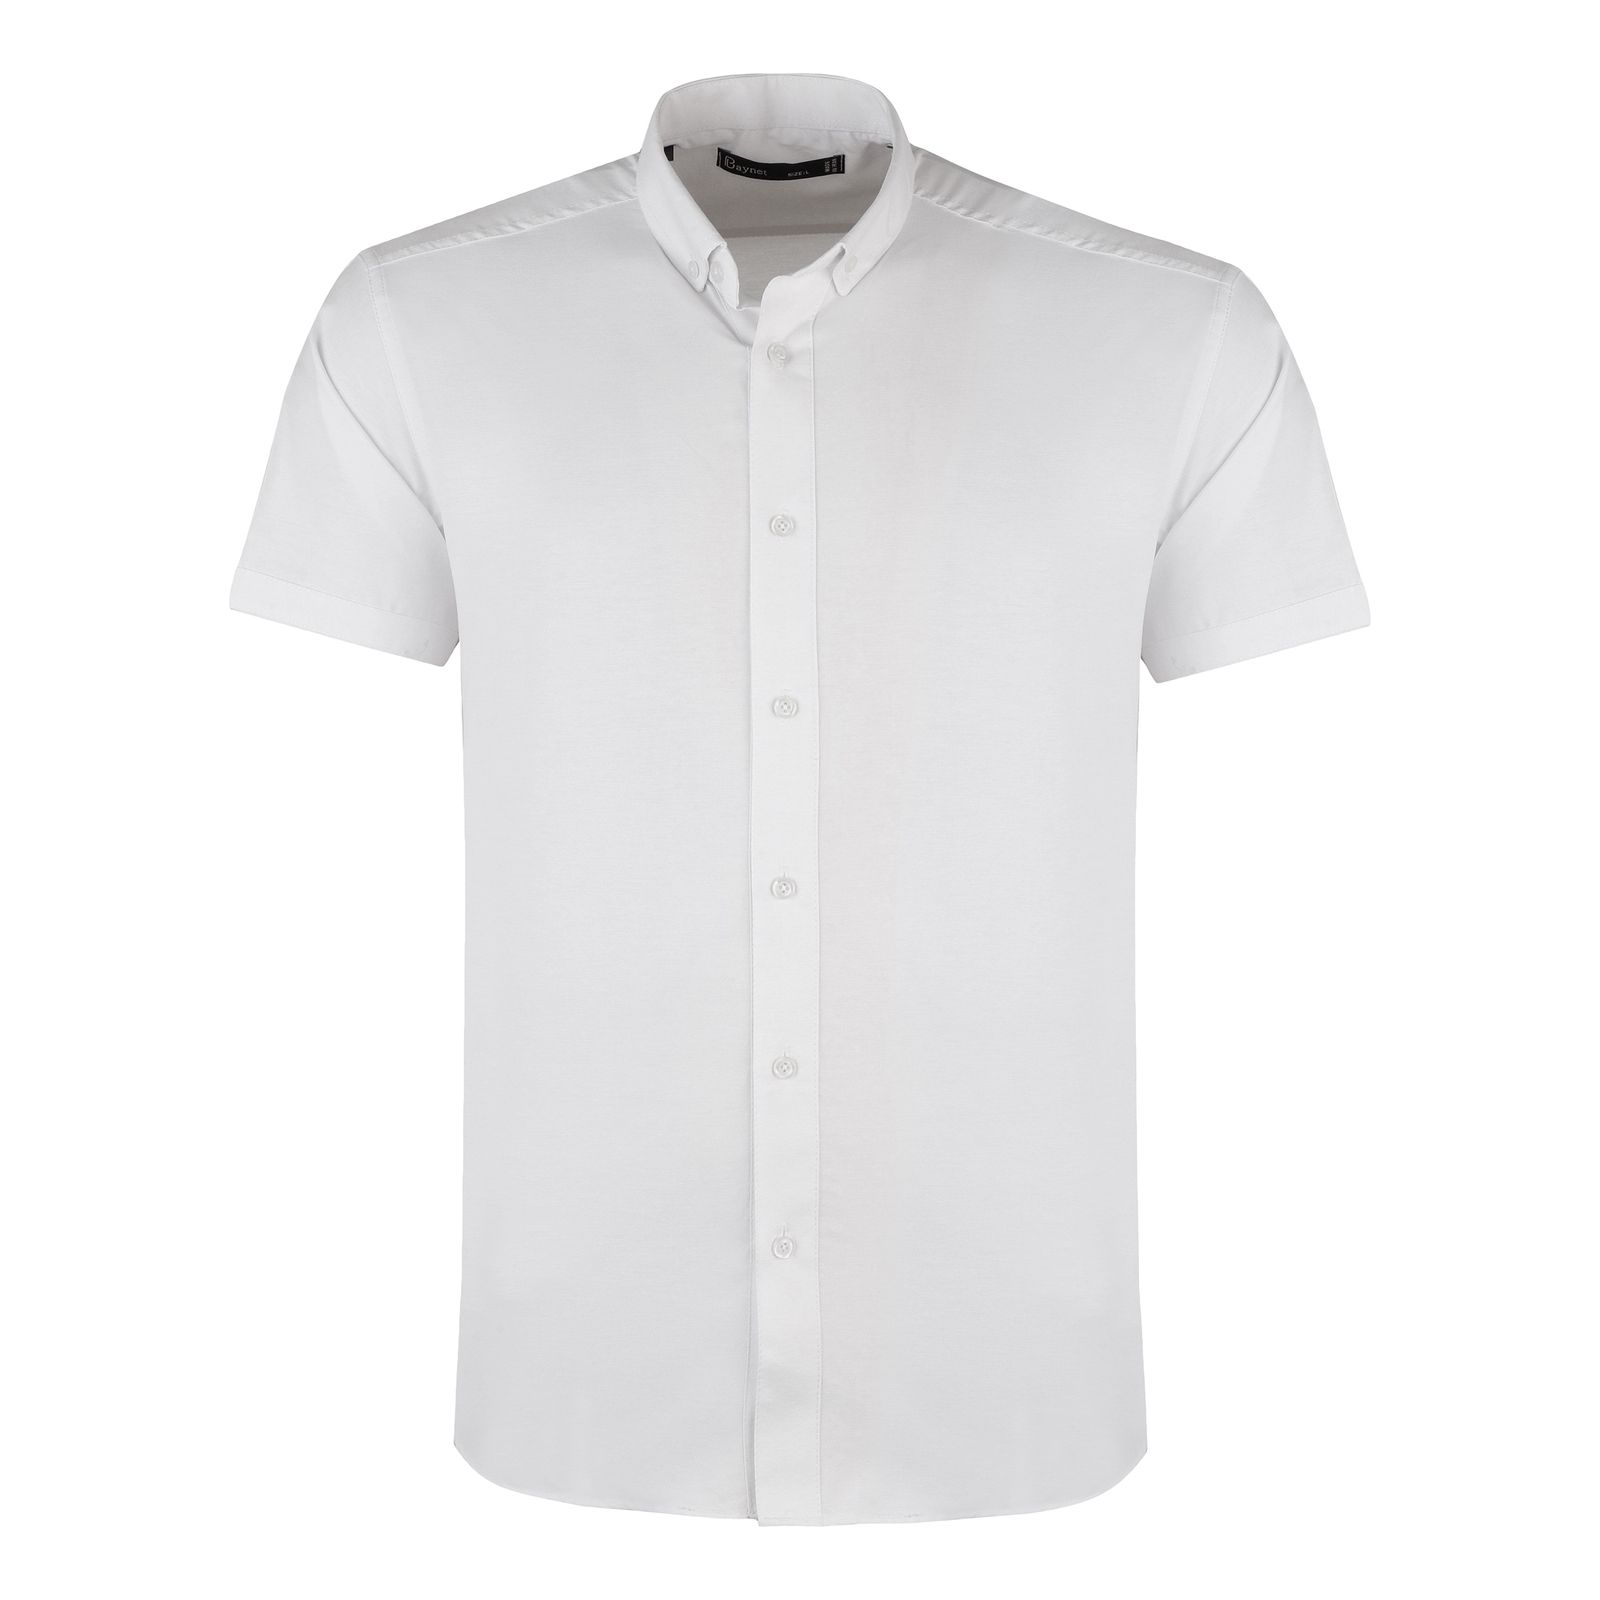 پیراهن آستین کوتاه مردانه باینت مدل 2261722 رنگ سفید -  - 1